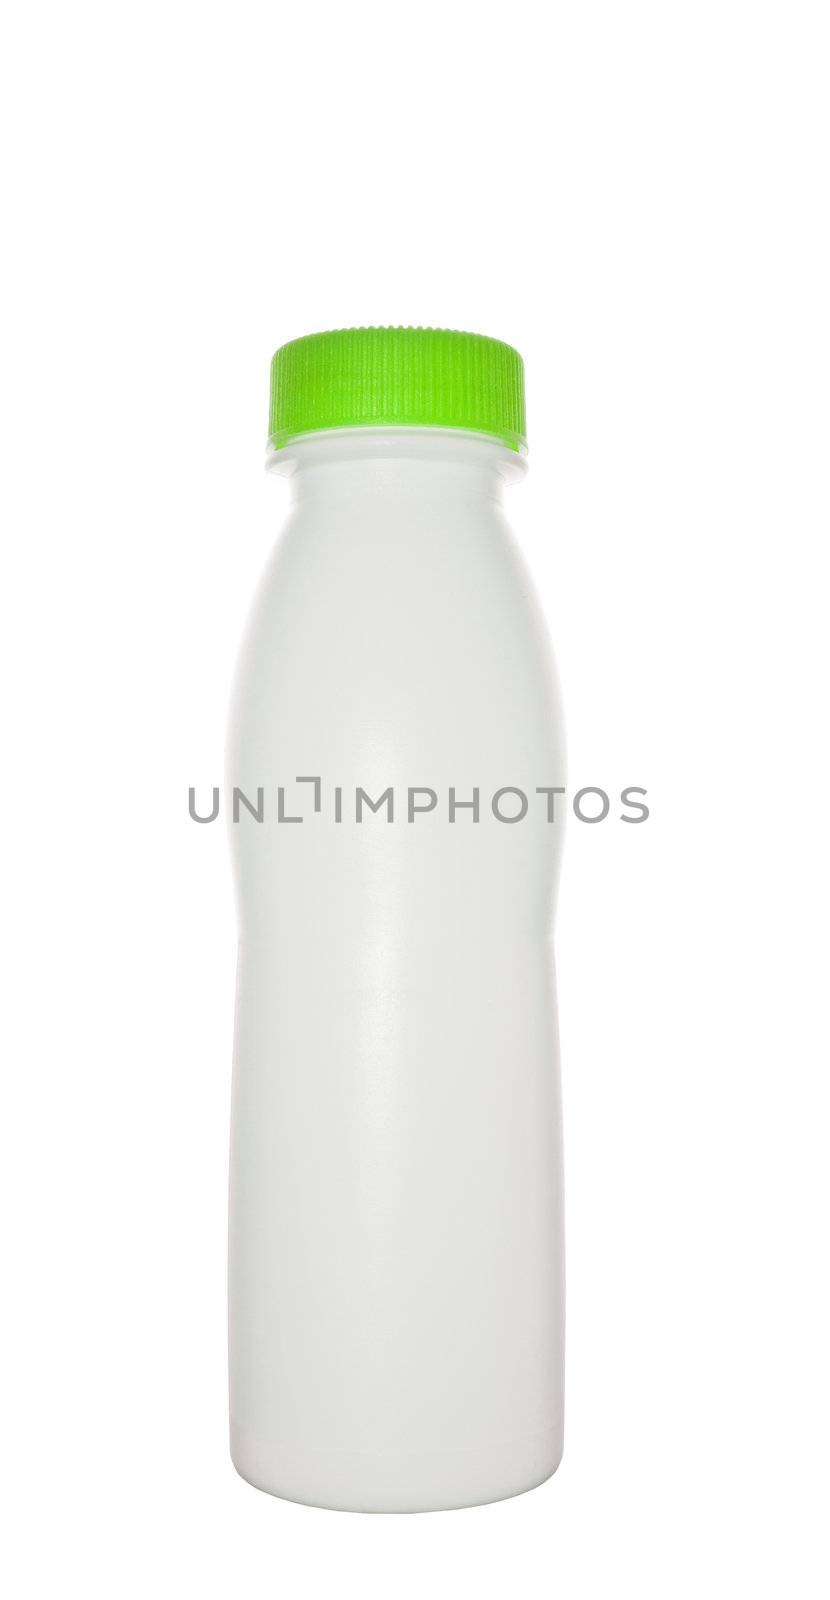 milk bottle with green cap by ozaiachin